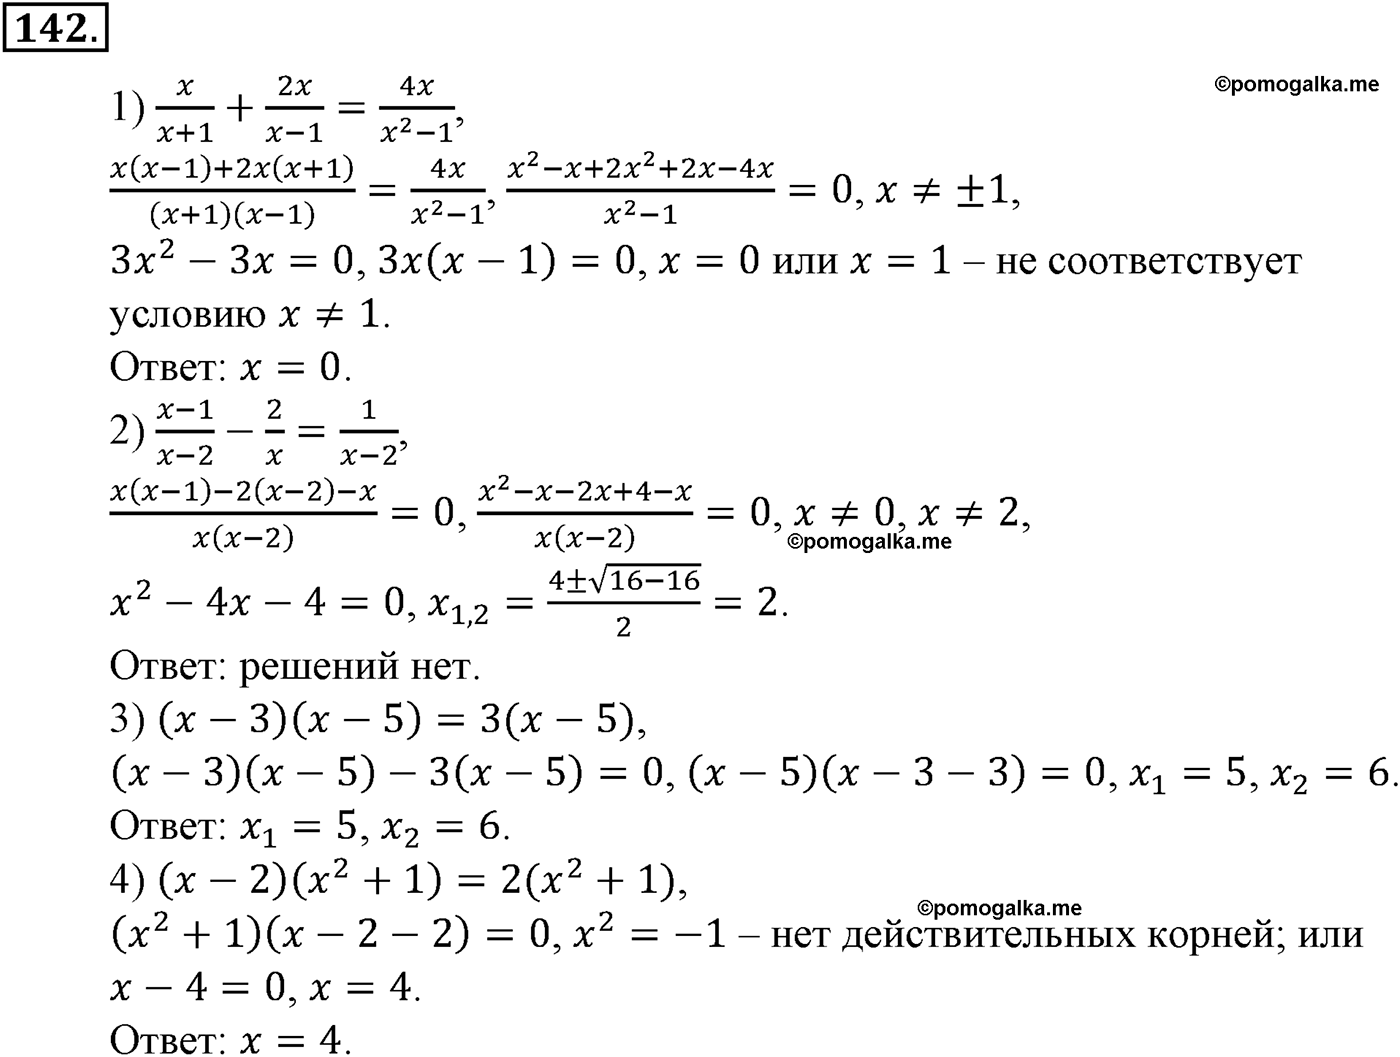 разбор задачи №142 по алгебре за 10-11 класс из учебника Алимова, Колягина